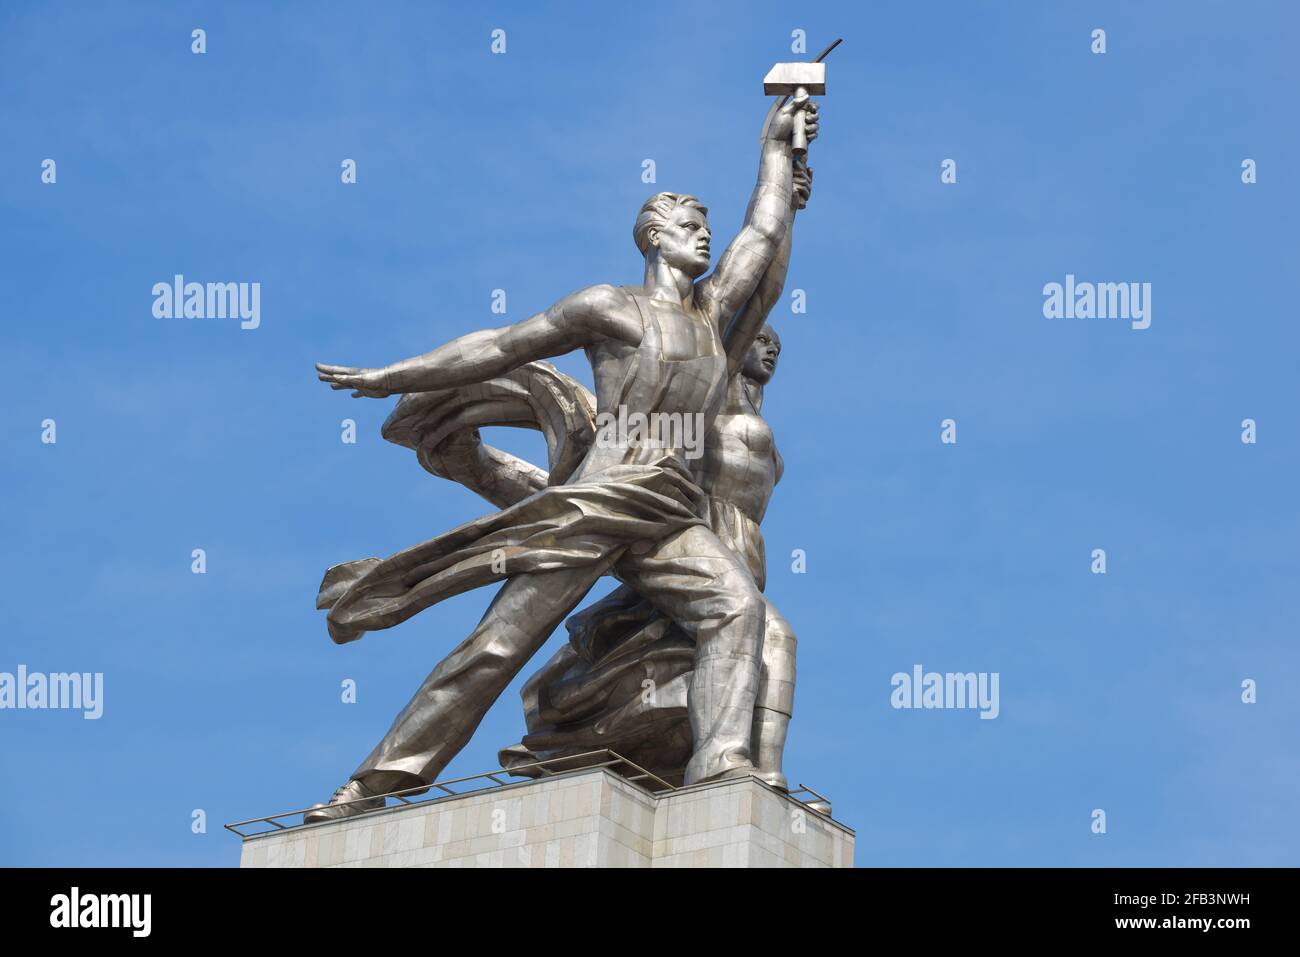 MOSKAU, RUSSLAND - 14. APRIL 2021: Sowjetisches Denkmal "Arbeiter und Kolchosbäuerin" vor dem Hintergrund des blauen Himmels Stockfoto